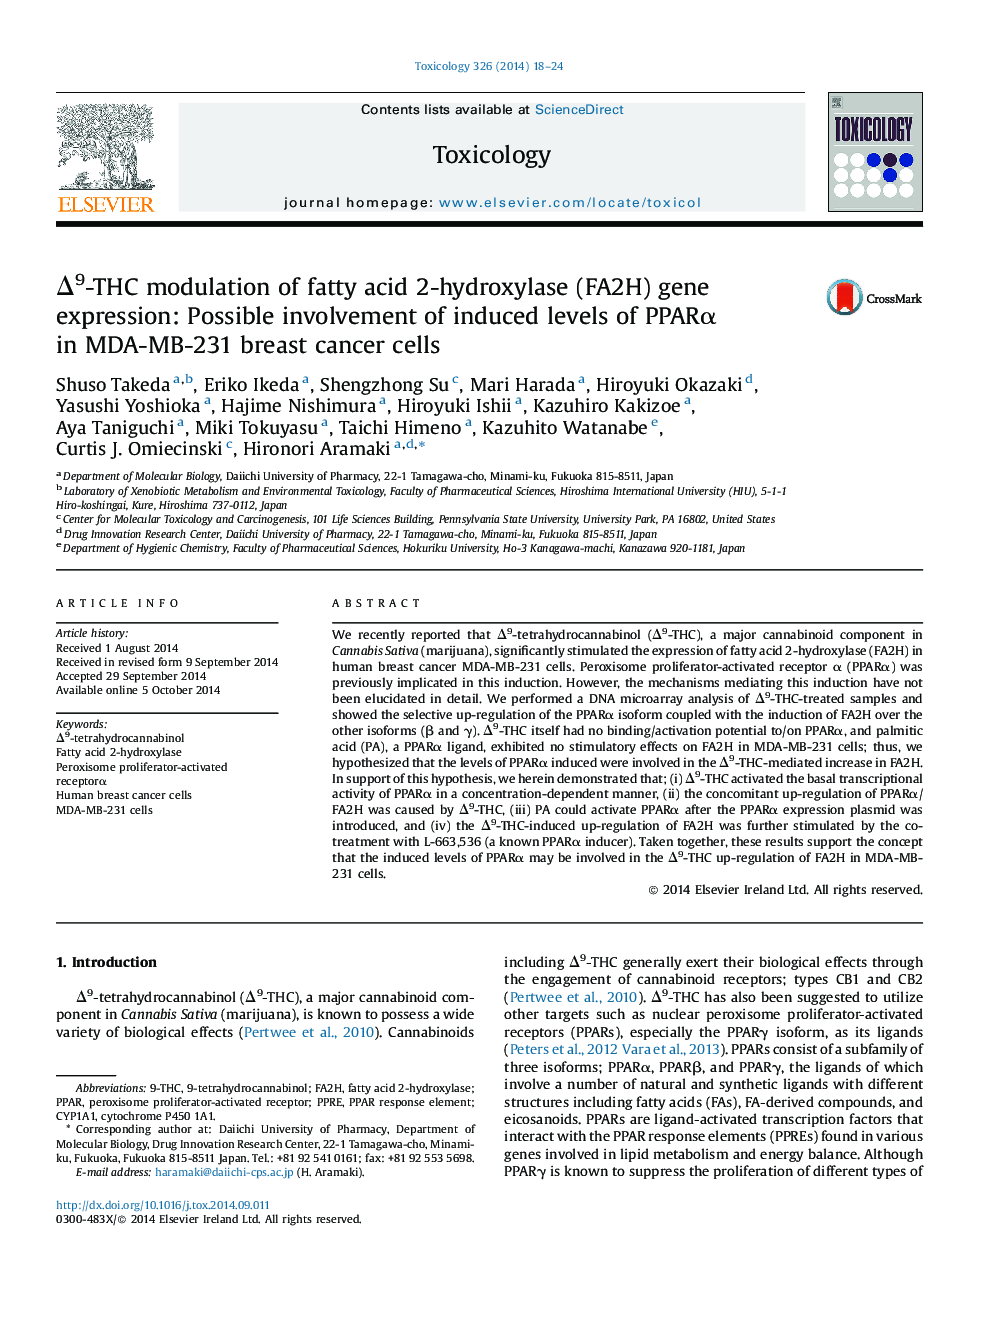 Δ9-THC modulation of fatty acid 2-hydroxylase (FA2H) gene expression: Possible involvement of induced levels of PPARα in MDA-MB-231 breast cancer cells